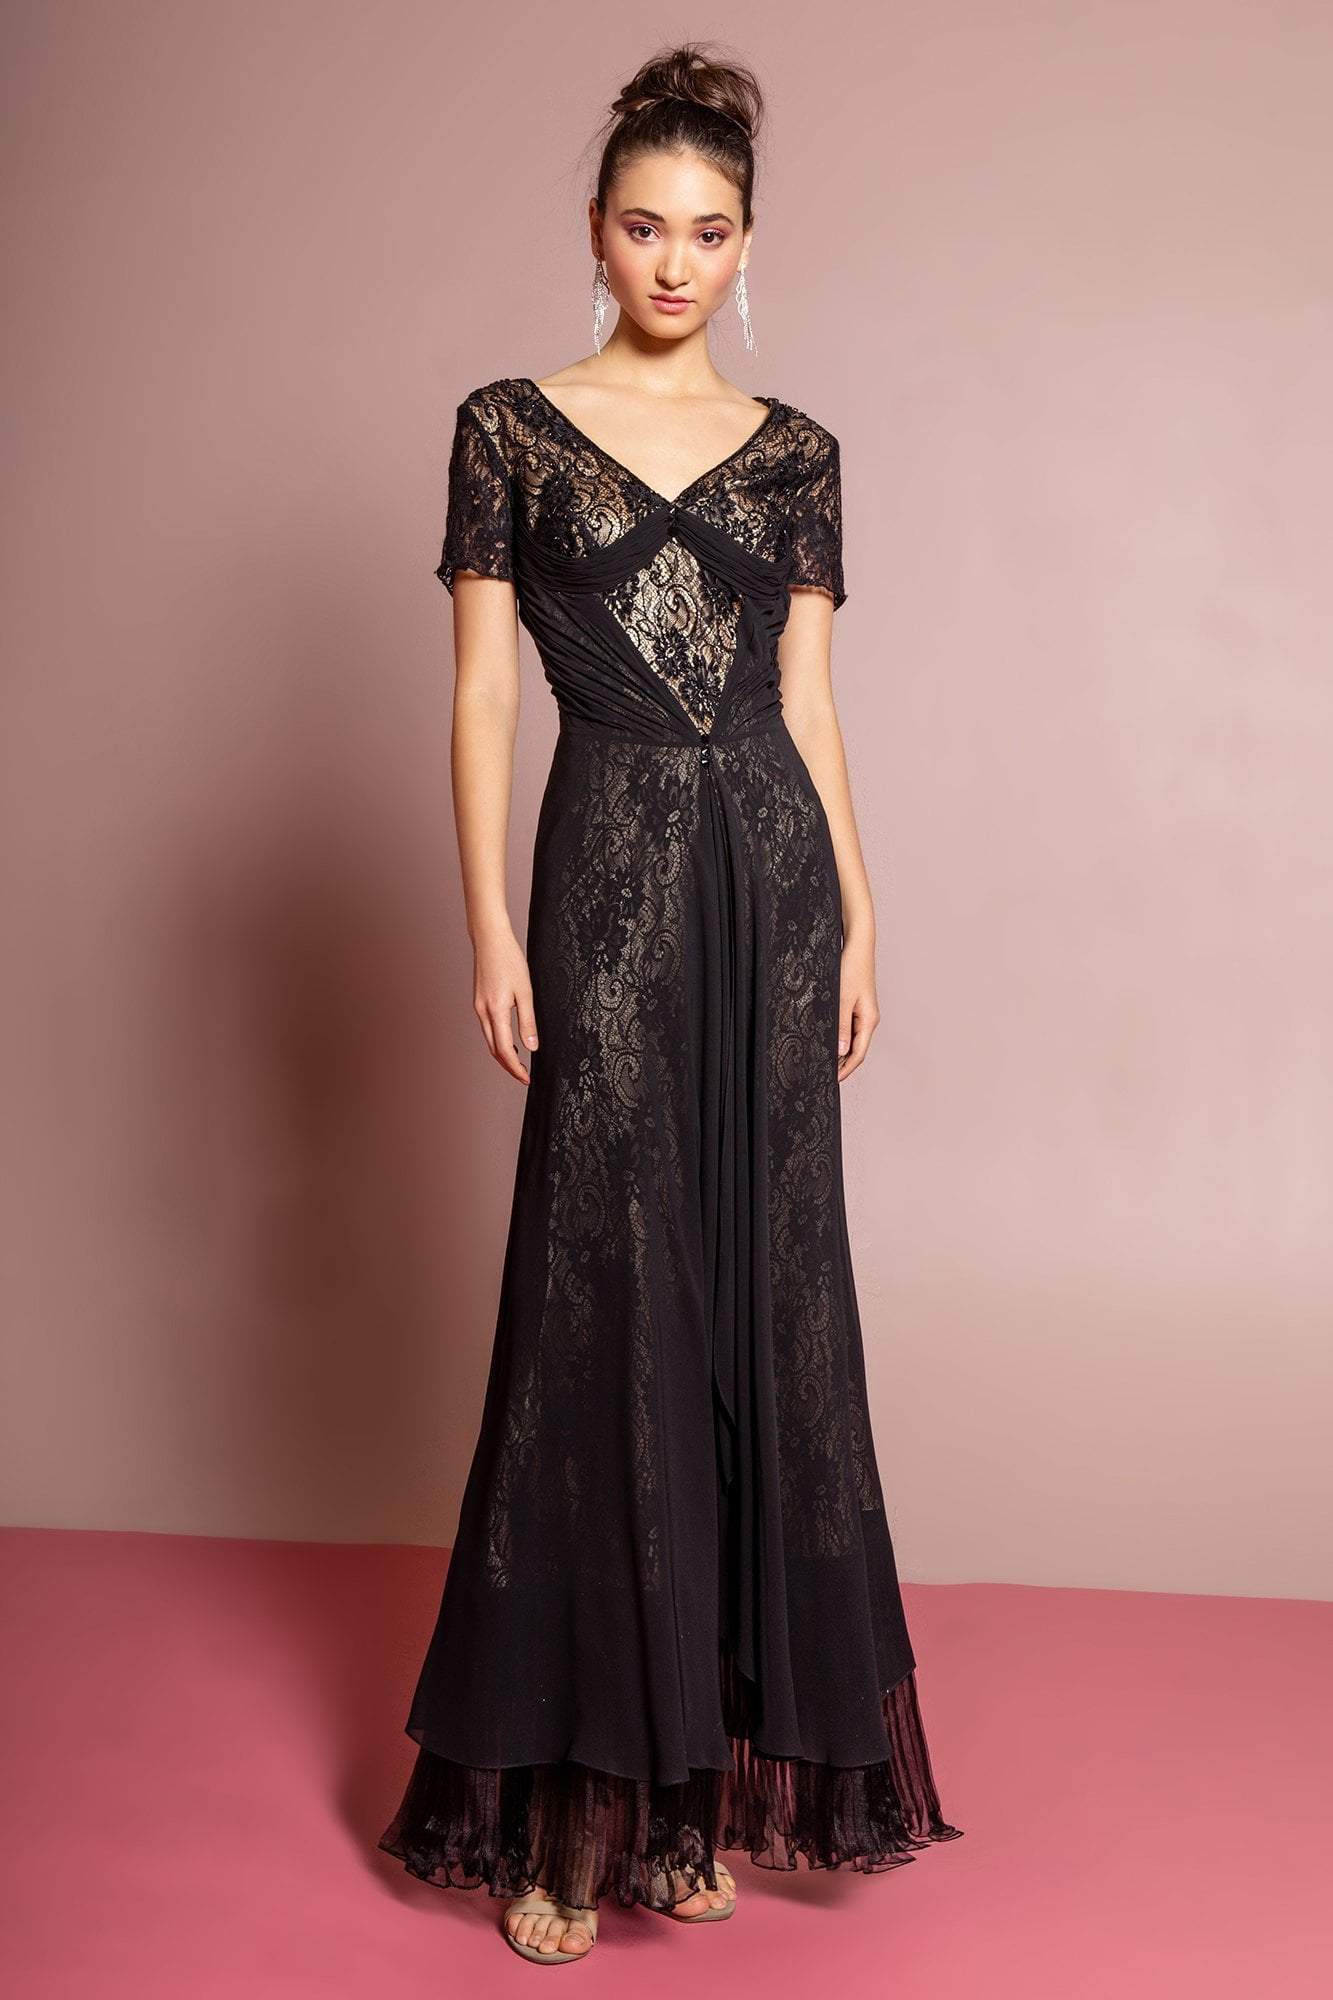  Elizabeth K-Special Occasion Dress-COLOR-Black,Gold